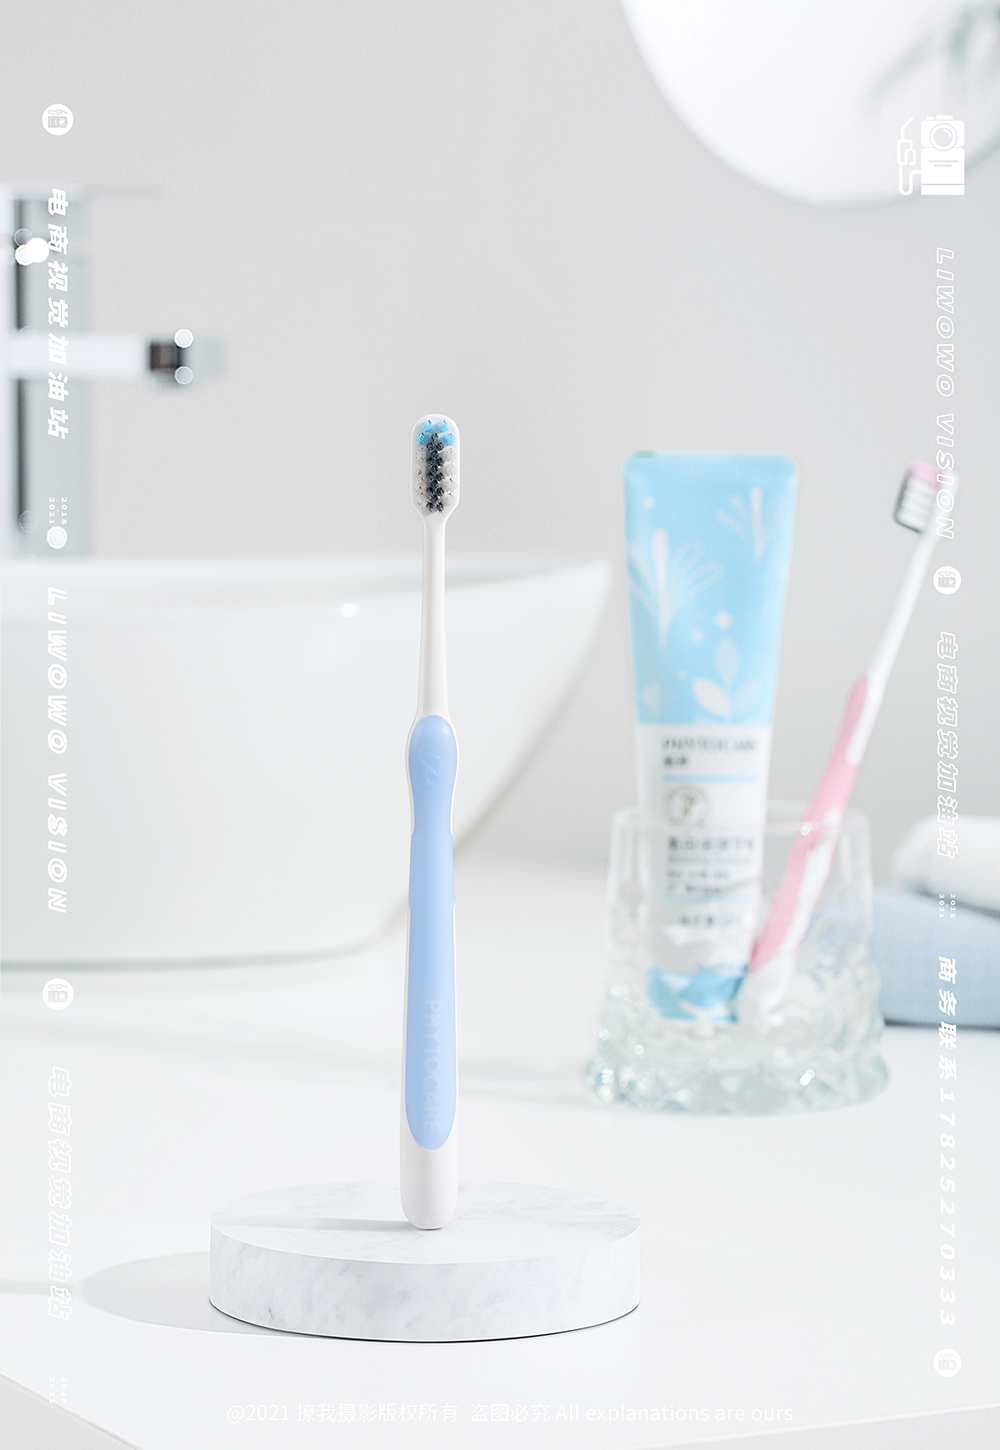 个人护理 | 植雅 x 牙膏 洗手液 x LIAOWO VISION